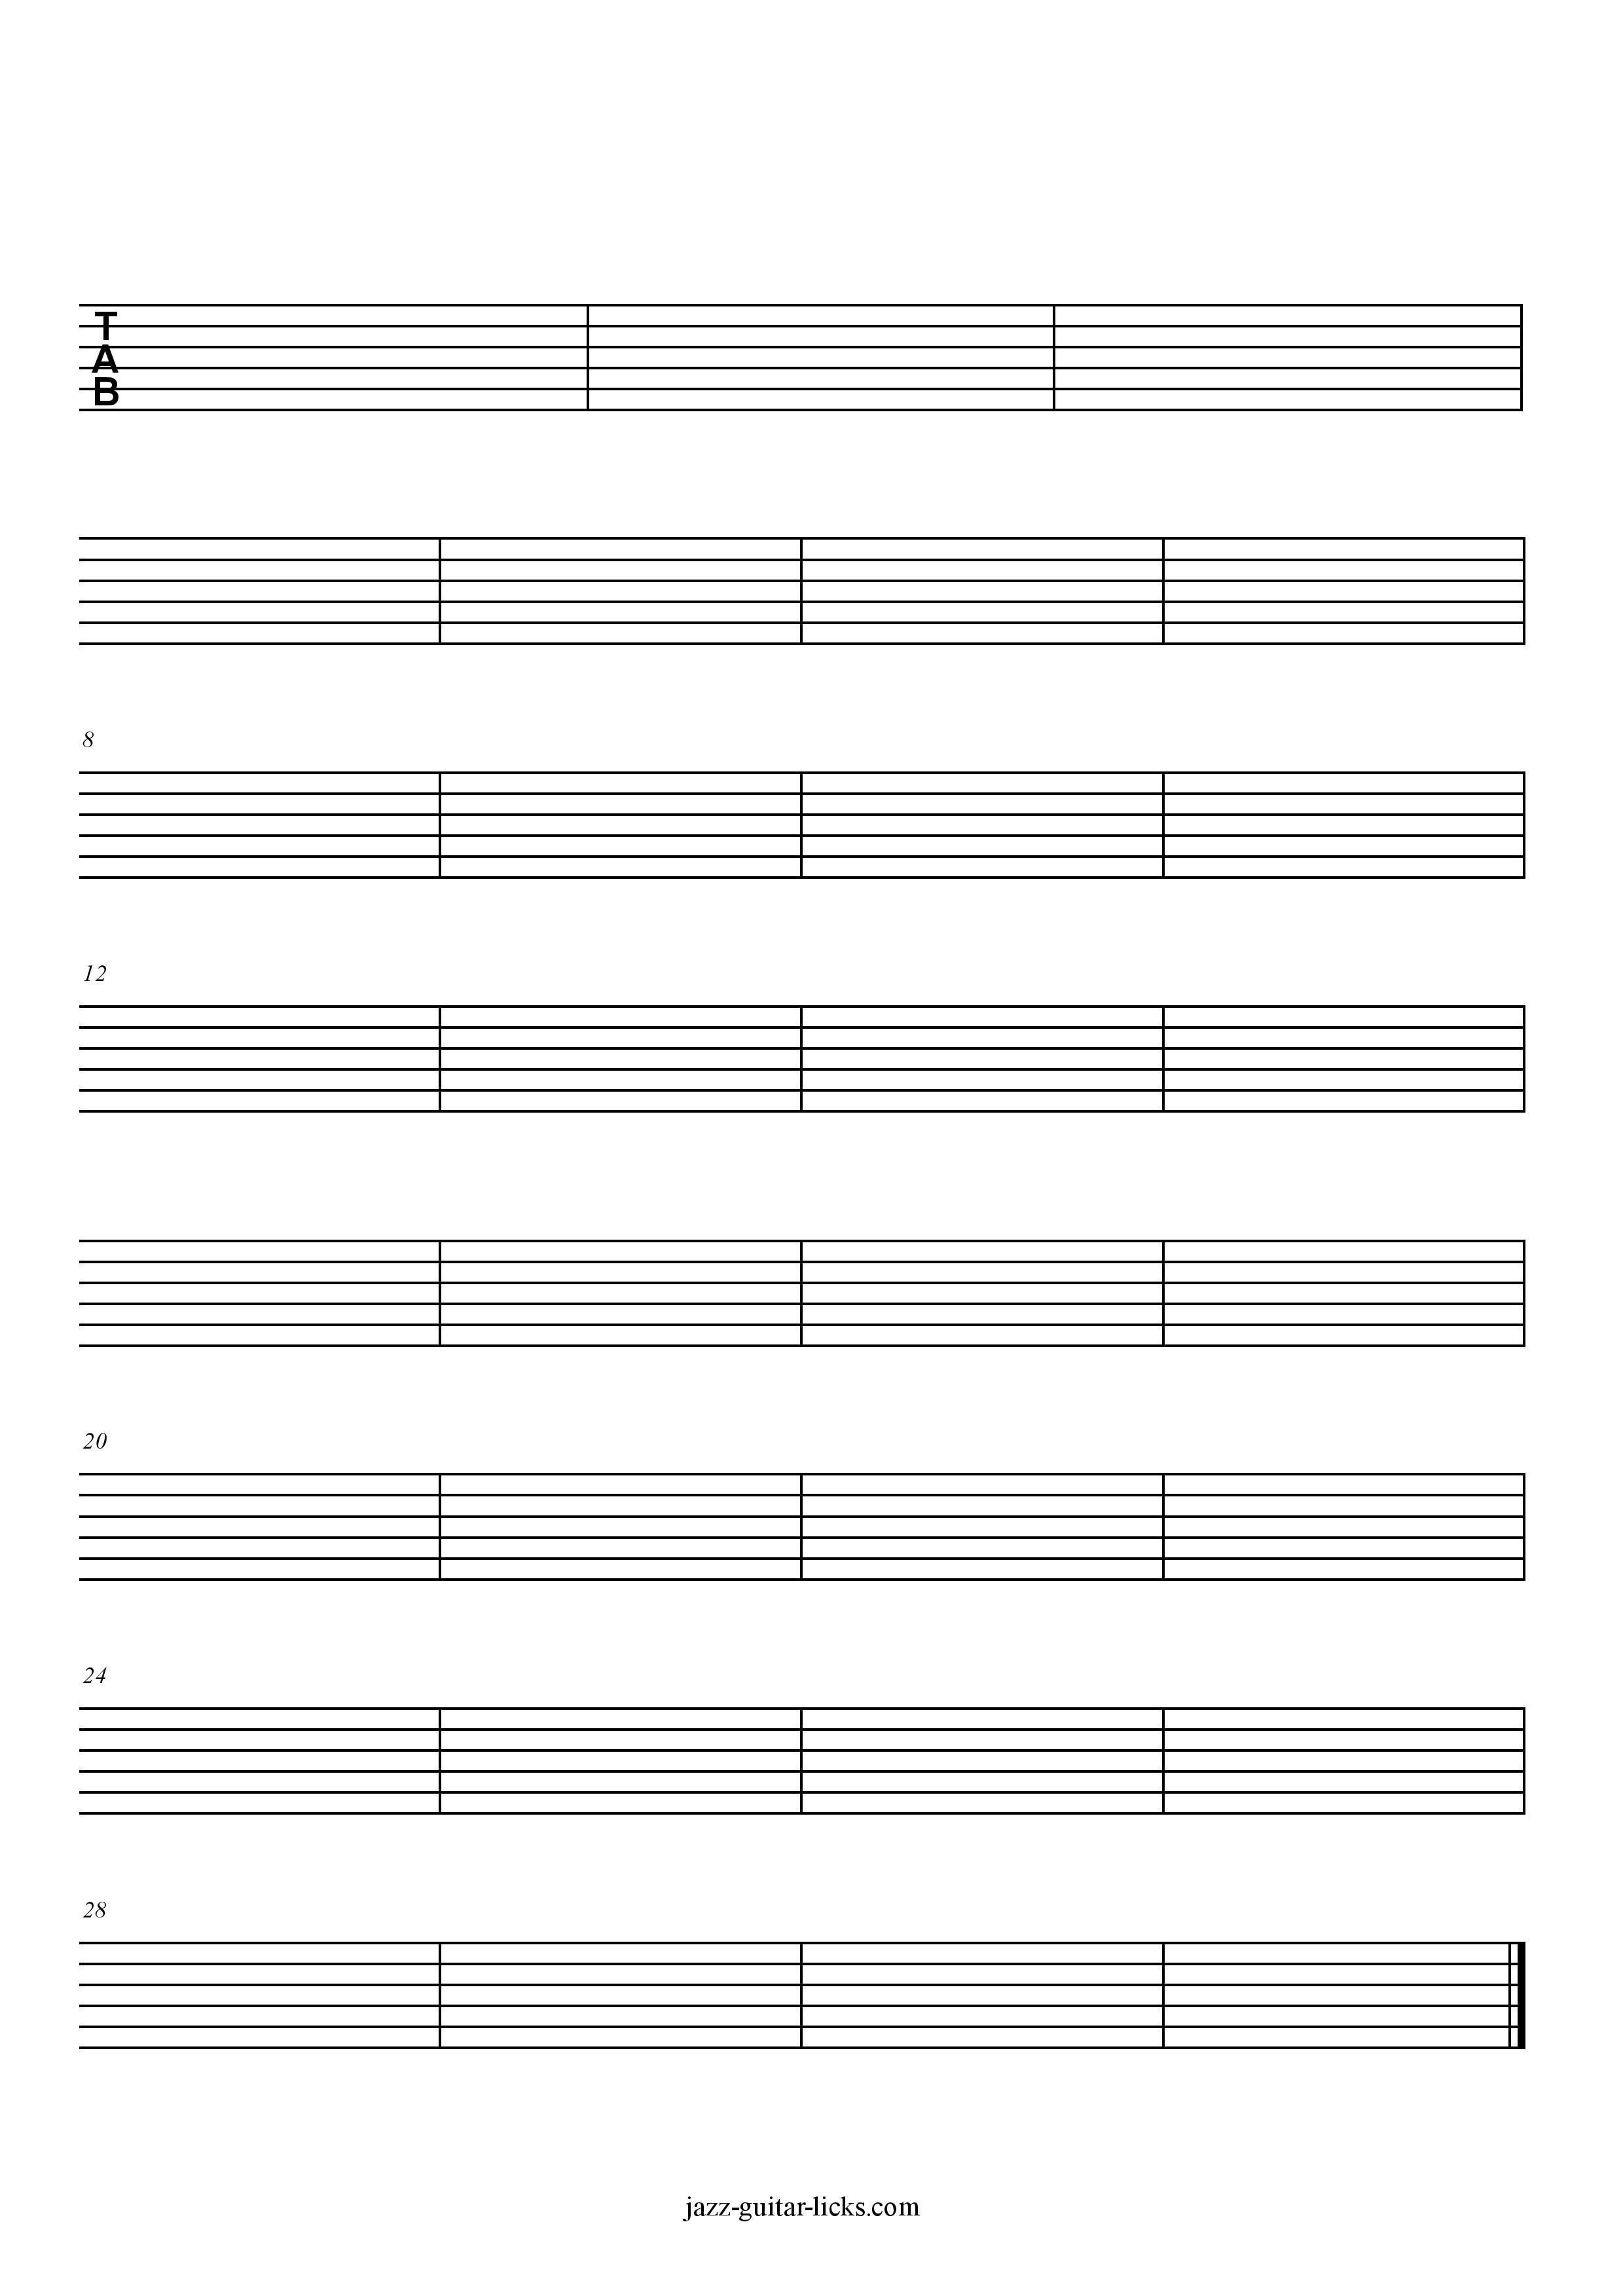 Printable Blank Guitar Tabs - Free Sheet Music | Jazz-Guitar-Licks - Free Printable Blank Sheet Music